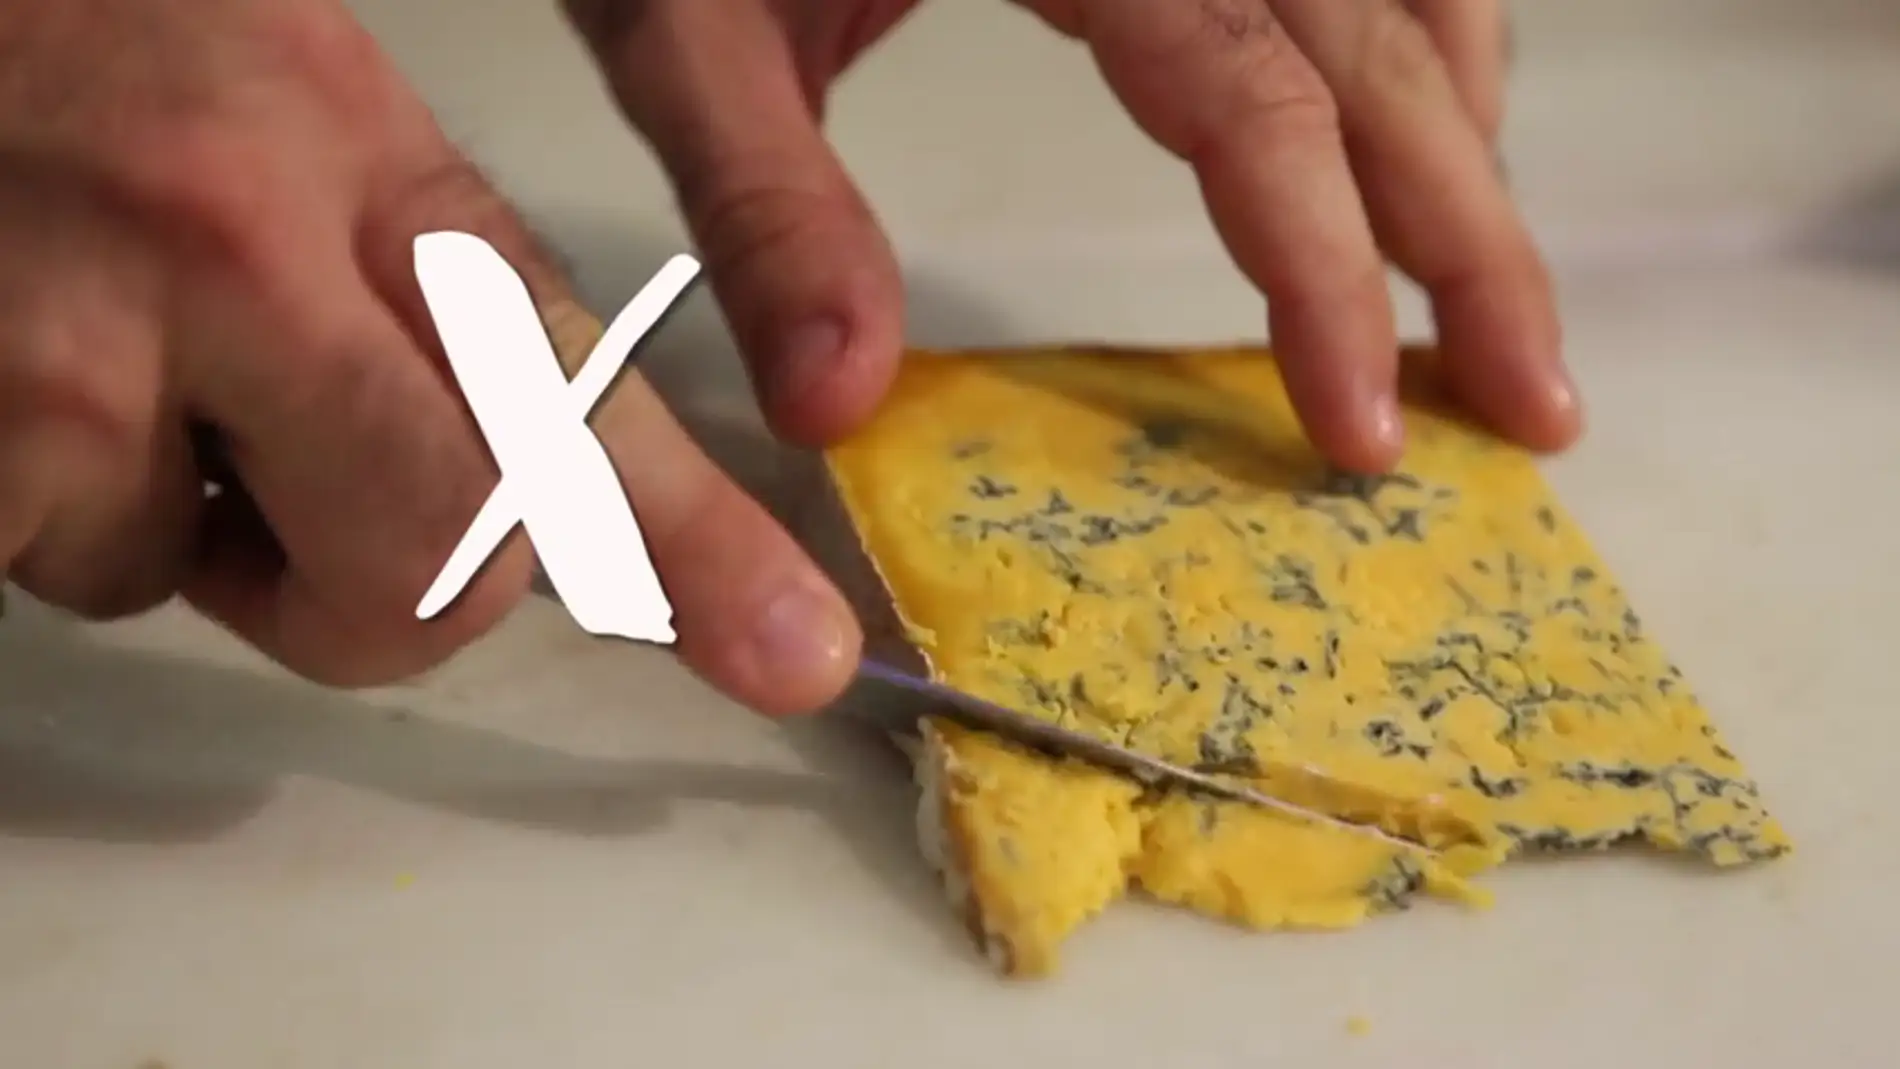 Frame 24.815705 de: ¿Cómo se corta el queso?